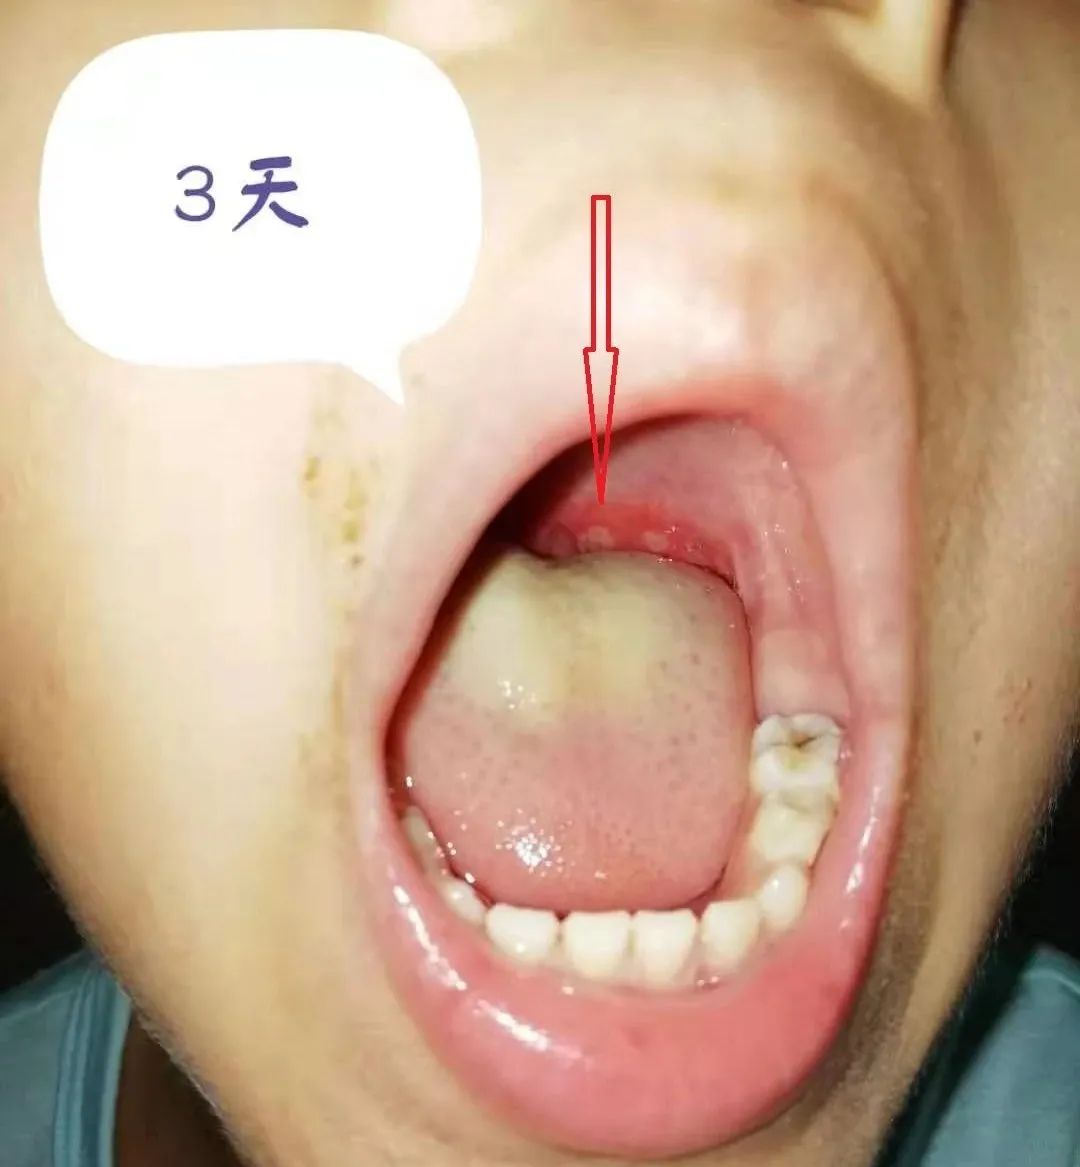 嘴里有疱疹，可不一定是疱疹性咽峡炎